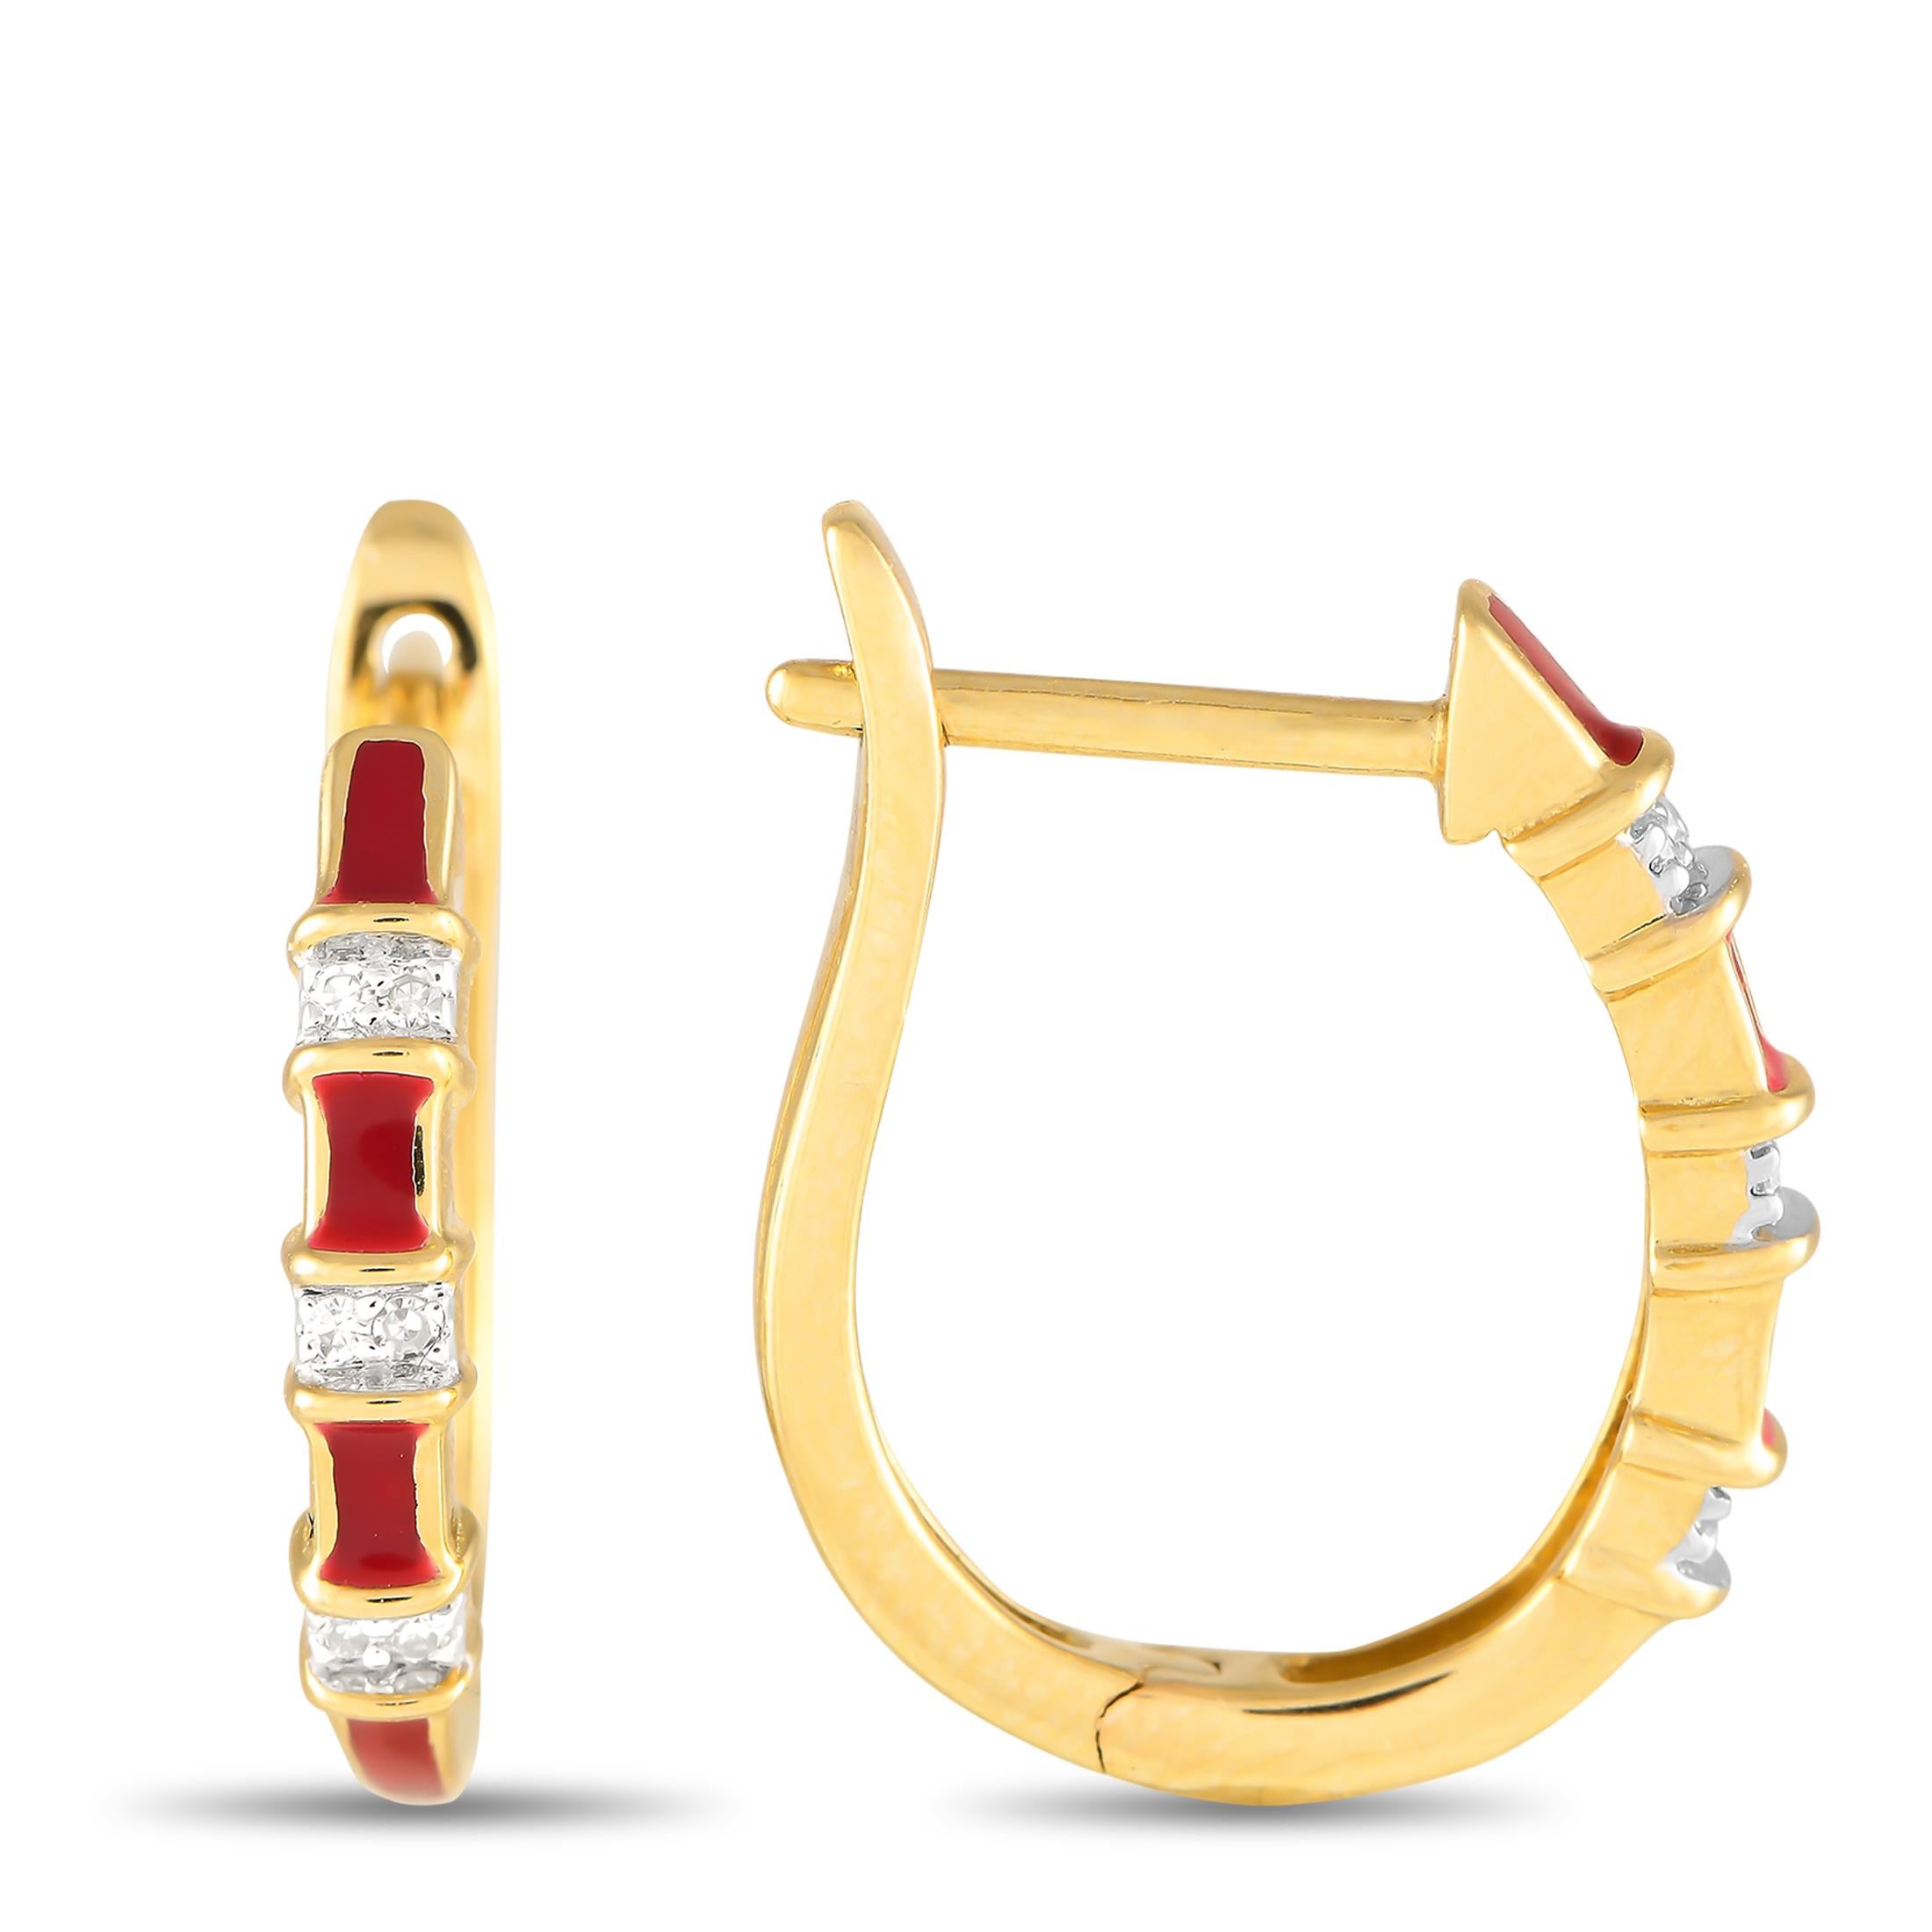 Rote Emaille-Akzente machen diese schlichten, eleganten Ohrringe zu einem echten Hingucker. Jedes Stück hat eine klassische Fassung aus 14K Gelbgold mit einer Länge von 0,65 und einer Breite von 0,50. Diamanten mit einem Gesamtgewicht von 0,05 Karat